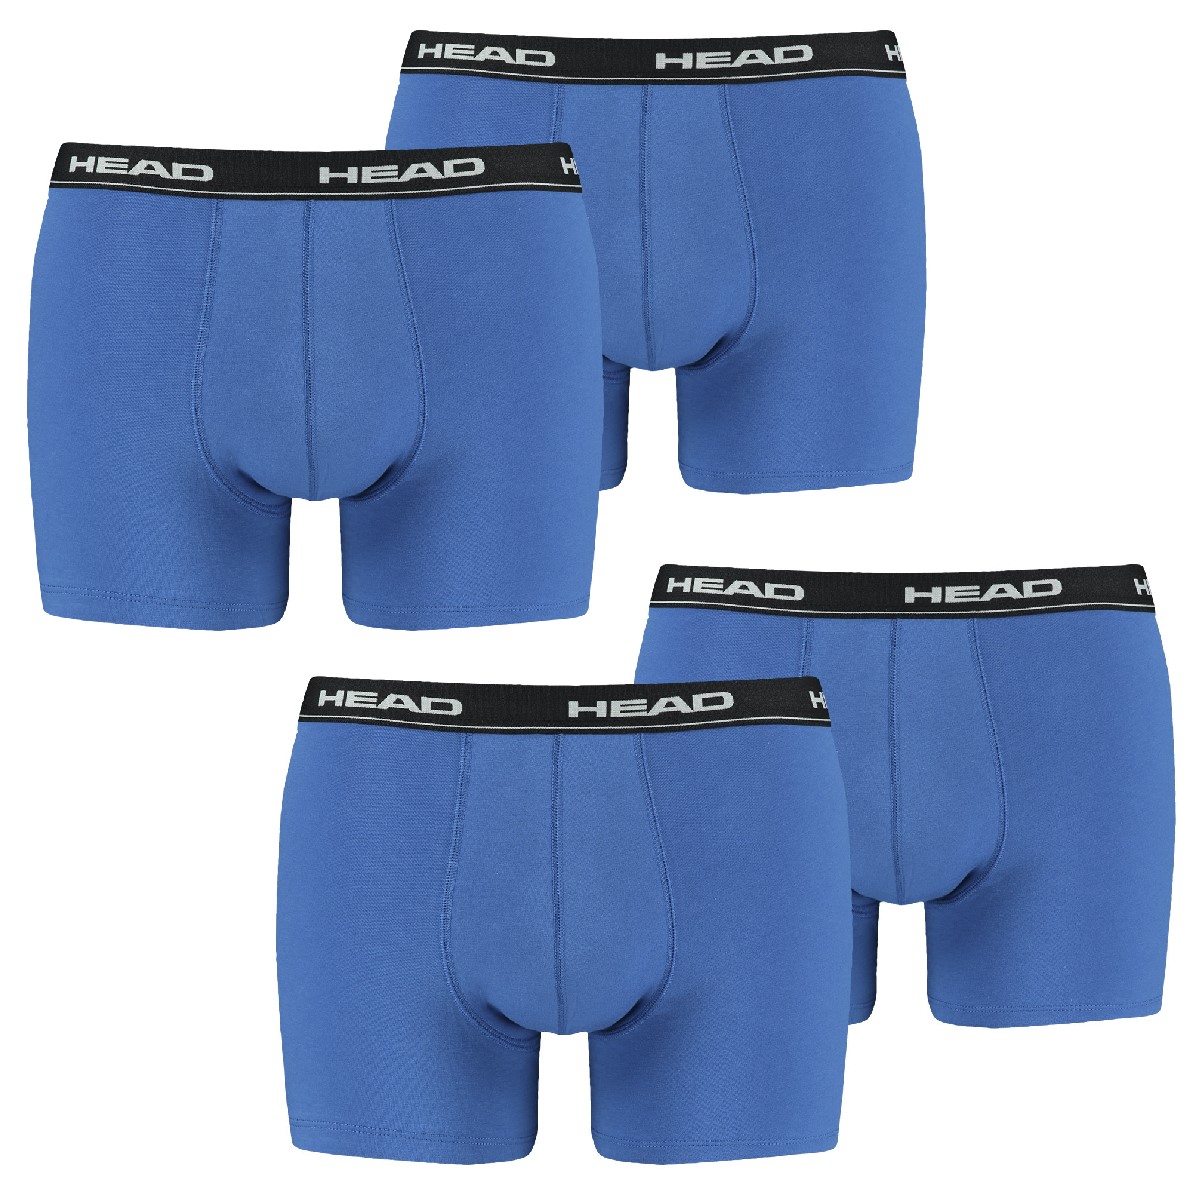 4 er Pack Head Boxer Boxershorts Men Pant Unterwäsche , Farbe:Dunklelgrau;Bekleidungsgröße:XL